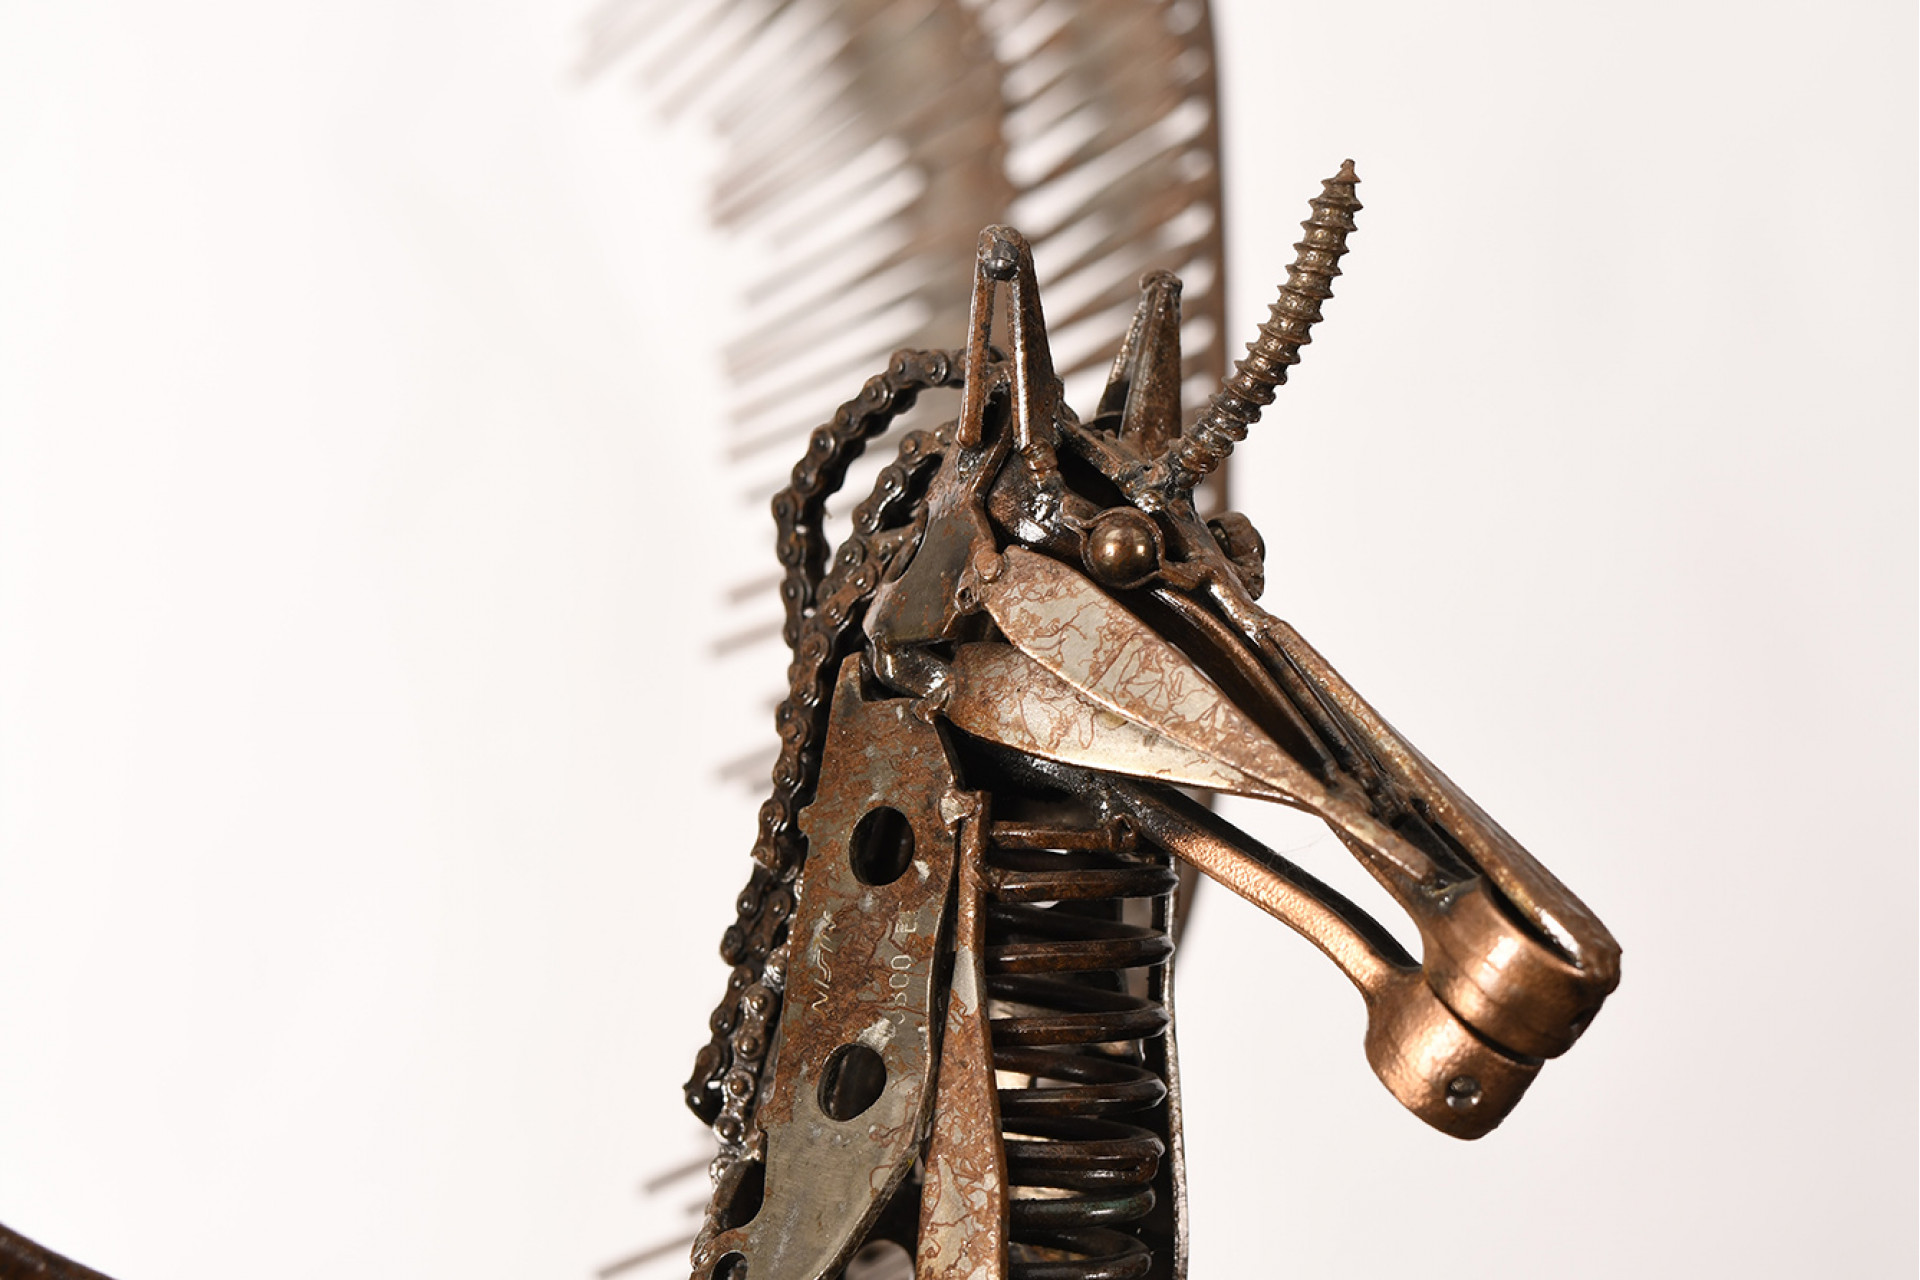 Hand Made Pegasus Metal Sculpture